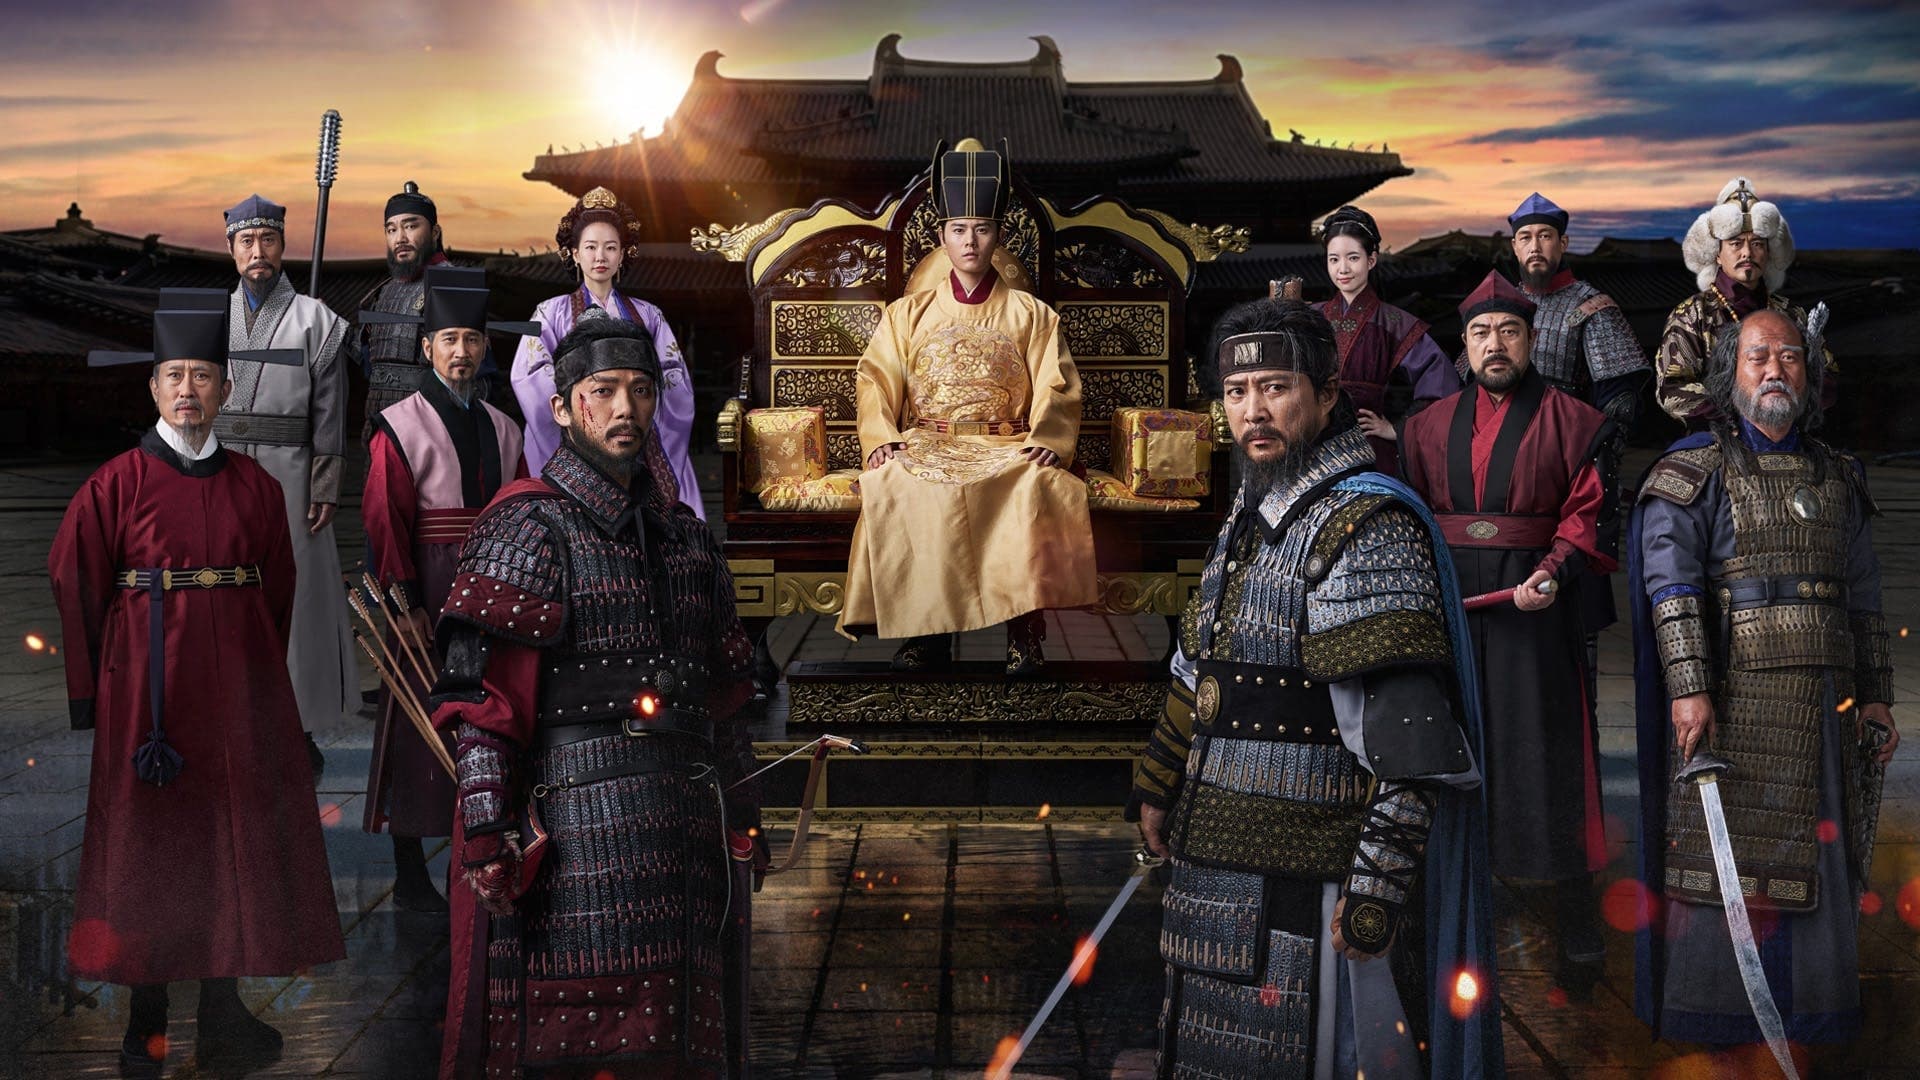 دانلود سریال کره‌ای The Goryeo-Khitan War